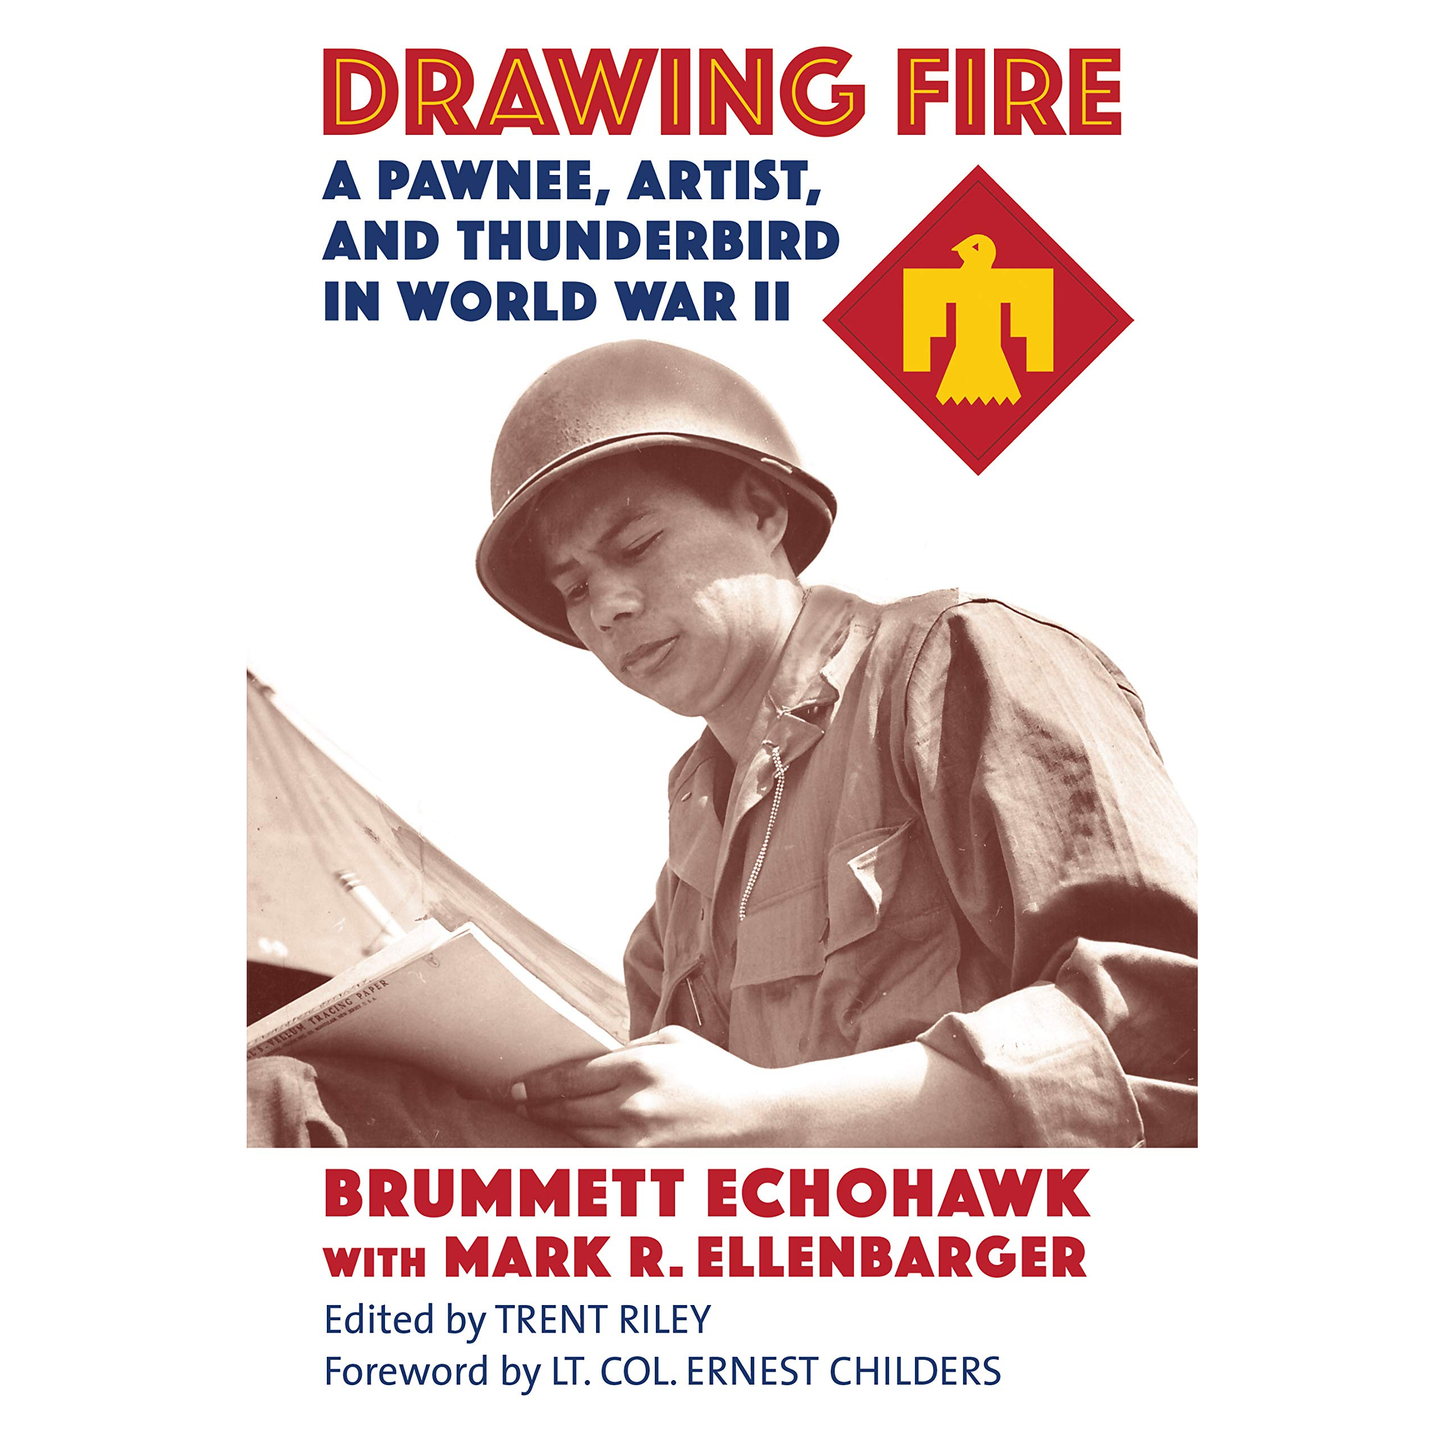 Drawing Fire: A Pawnee, Artist, and Thunderbird in World War II by Brummett Echohawk with Mark R. Ellenbarger